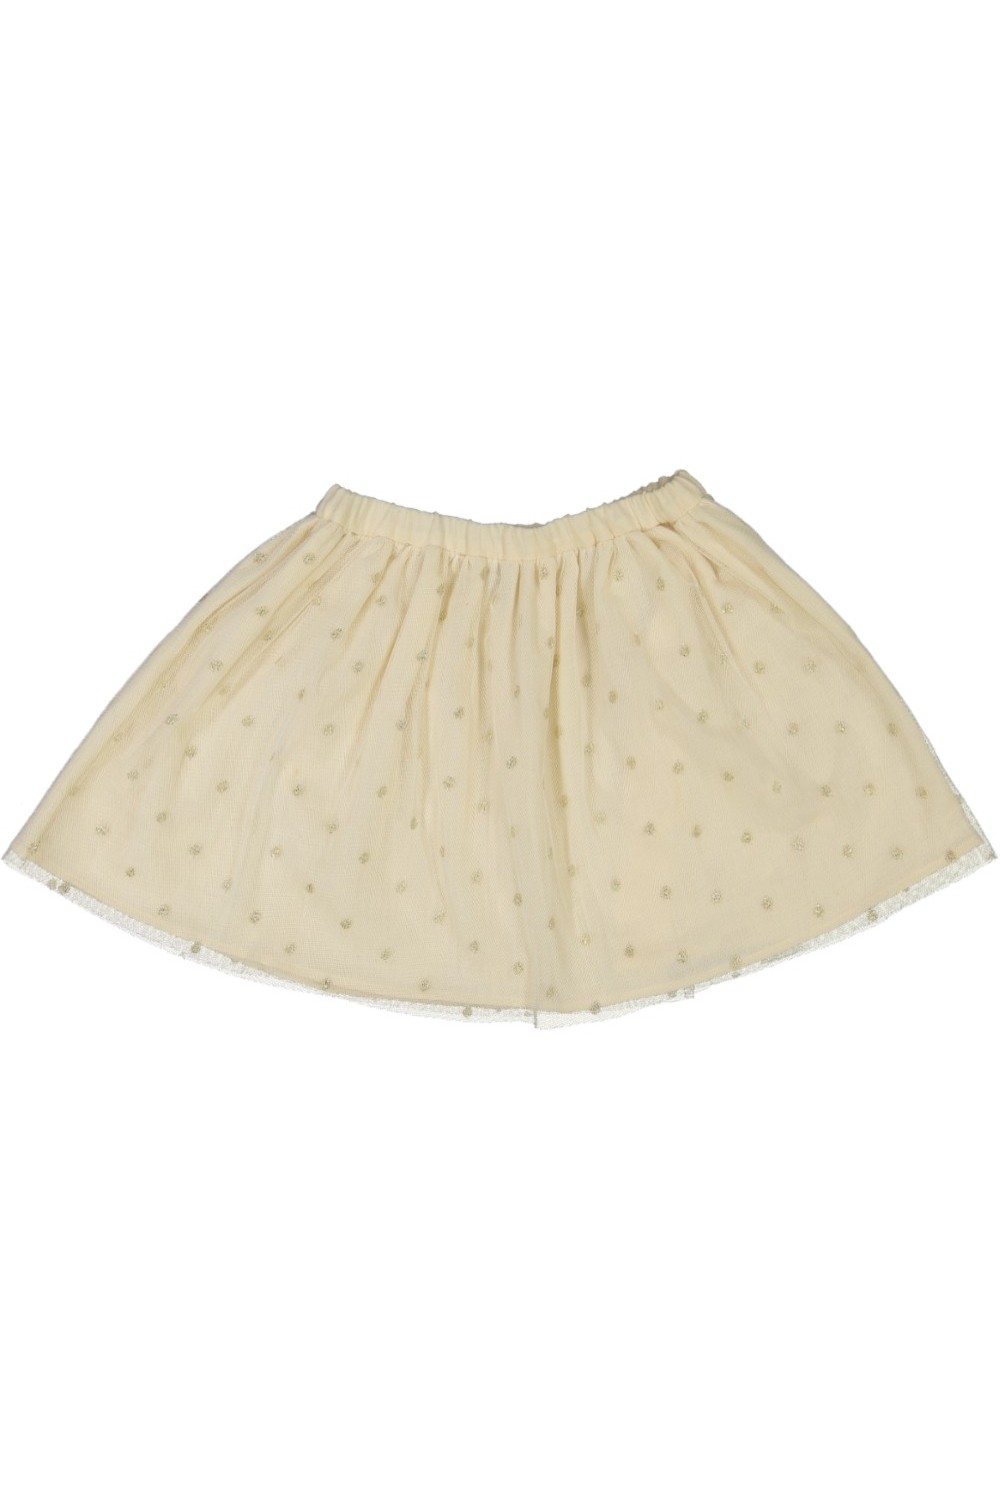 organic cotton gold christmas girl's skirt